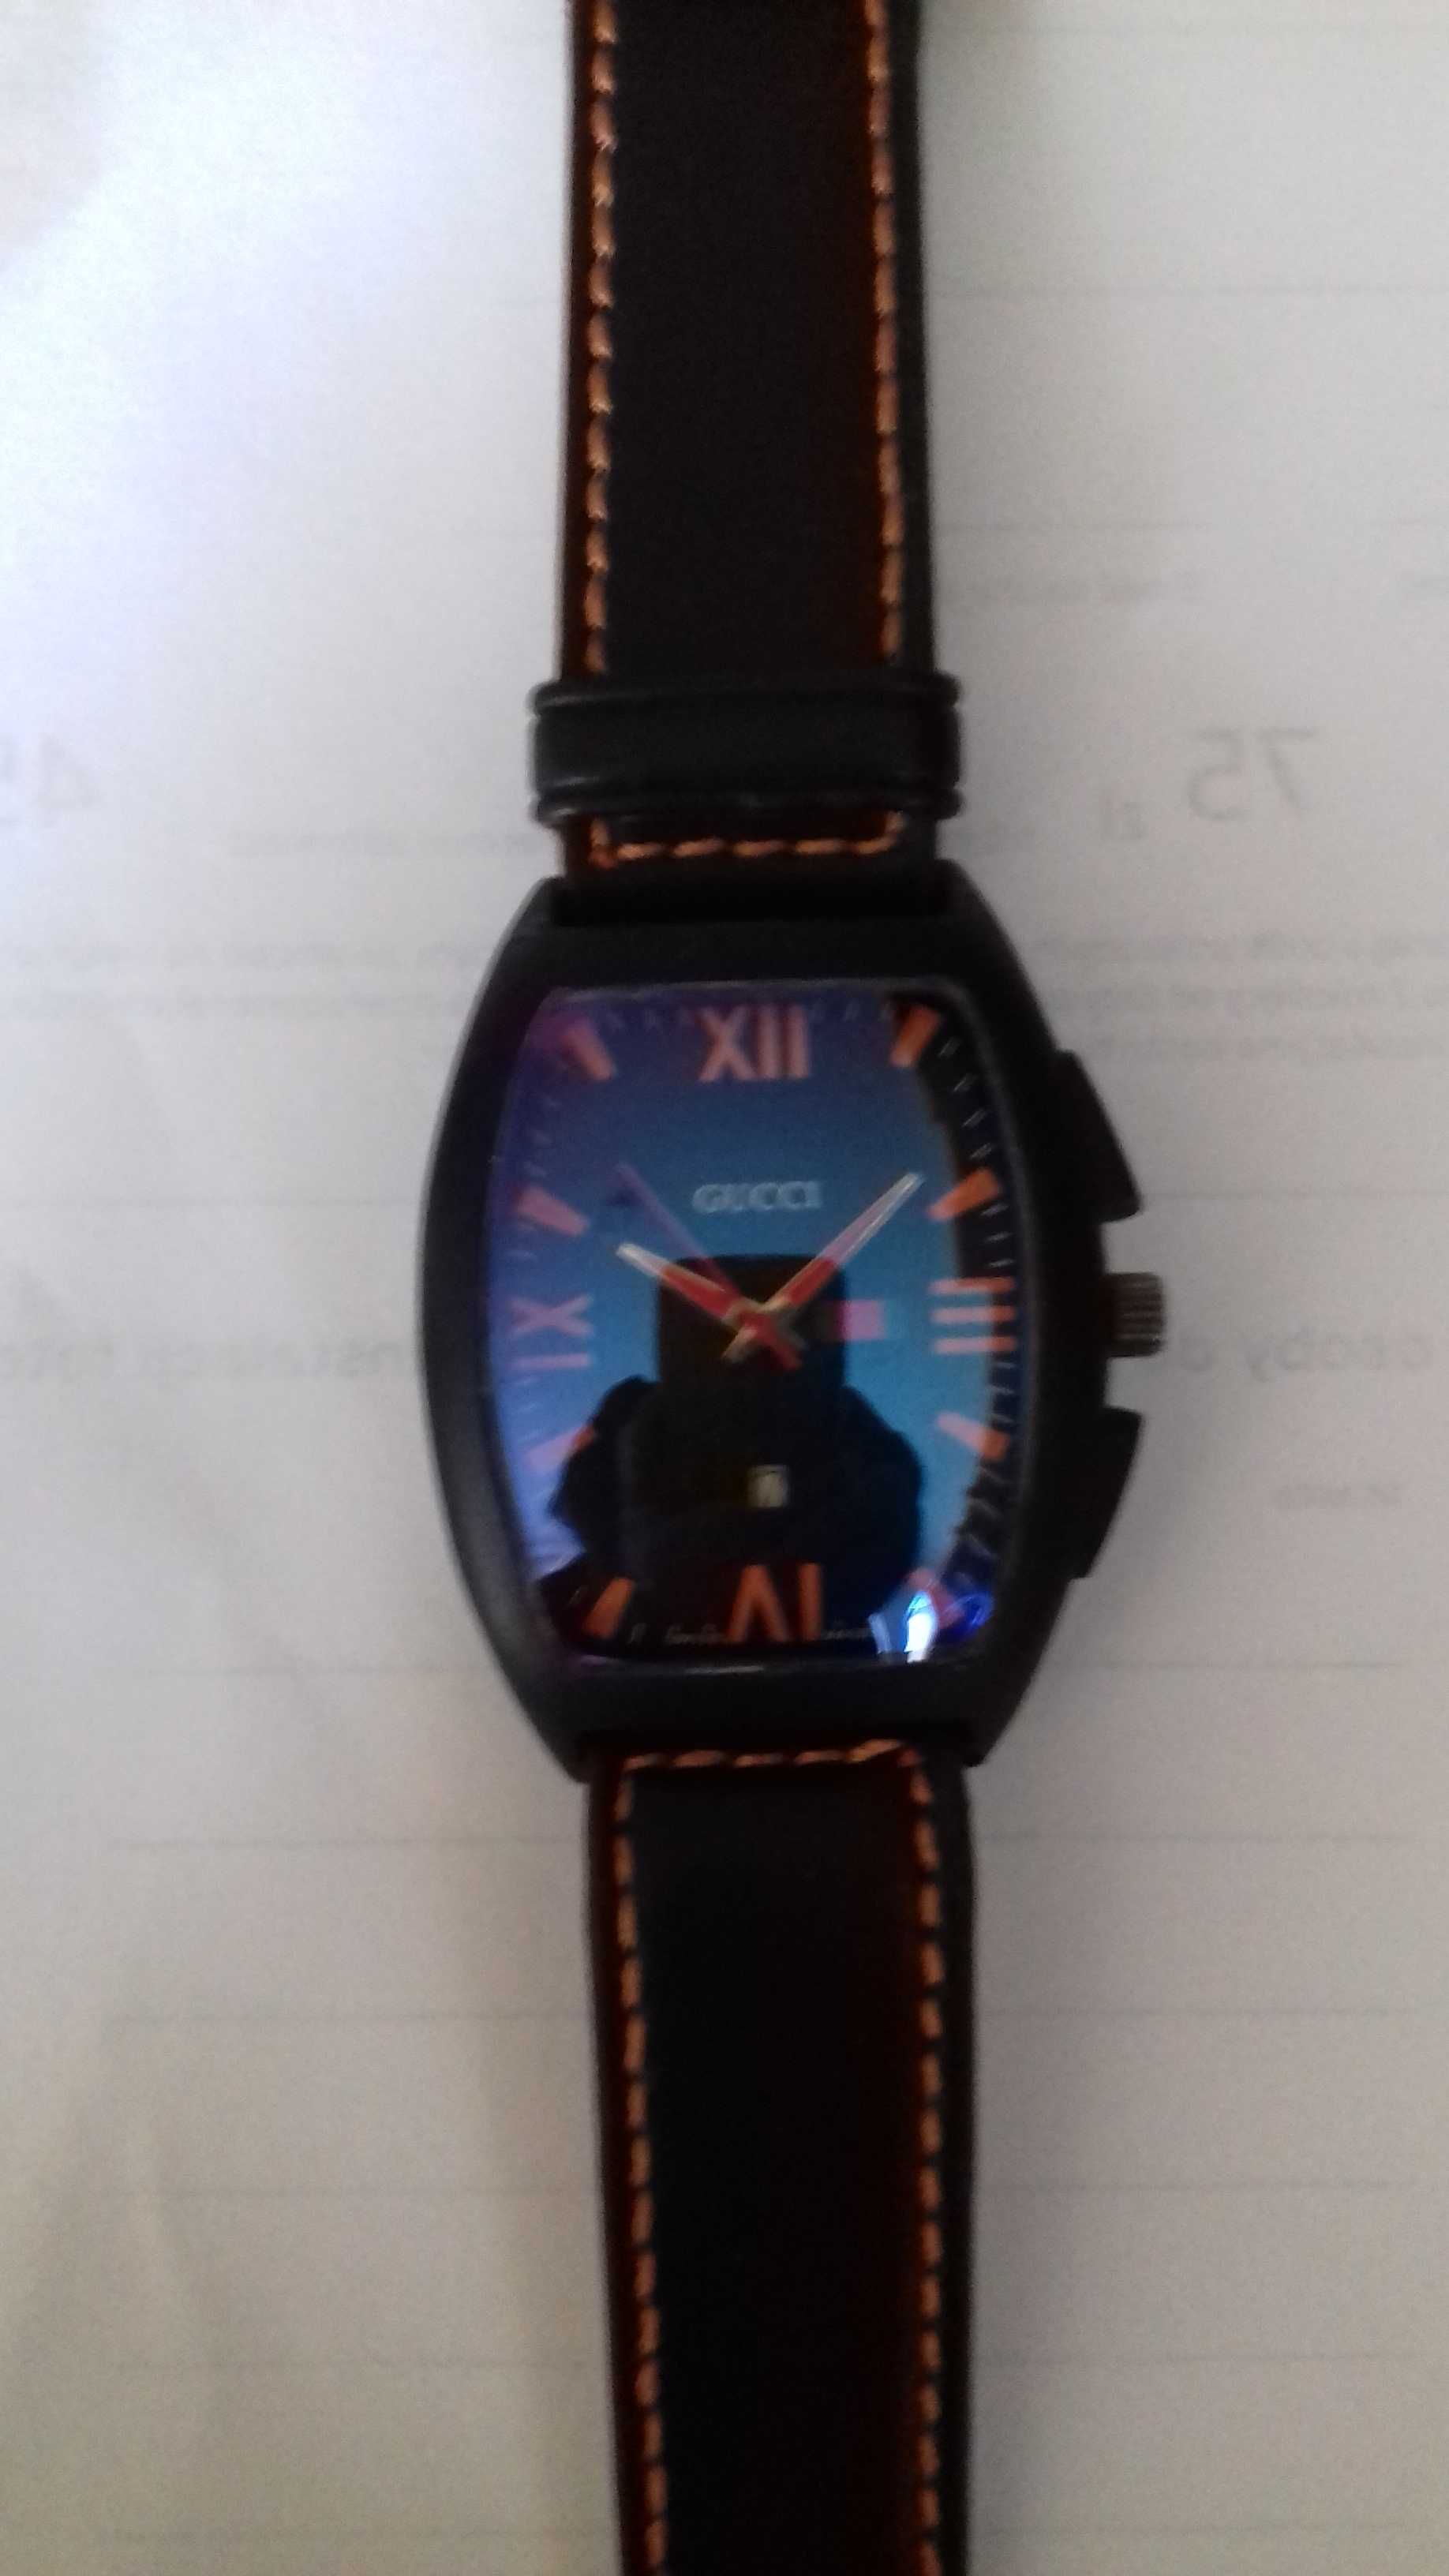 Zegarek Gucci czarny z pomarańczowym wykończeniem 279 zł